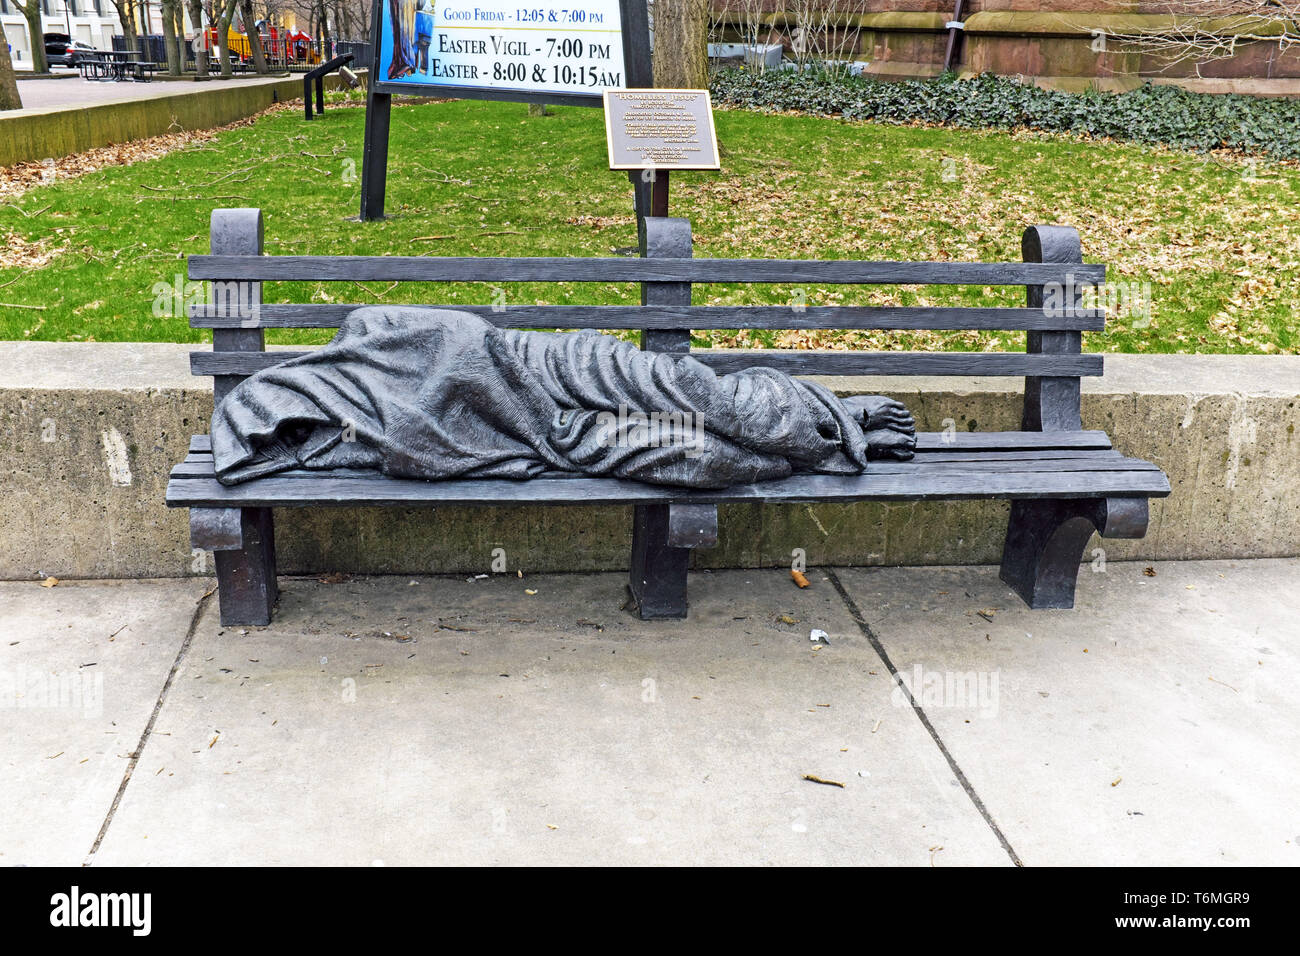 La statua di Gesù Senza Dimora di dimensioni reali, situata su una panchina del parco, è una scultura di Tim Schmalz situata fuori da una cattedrale di Pearl Street a Buffalo, New York. Foto Stock